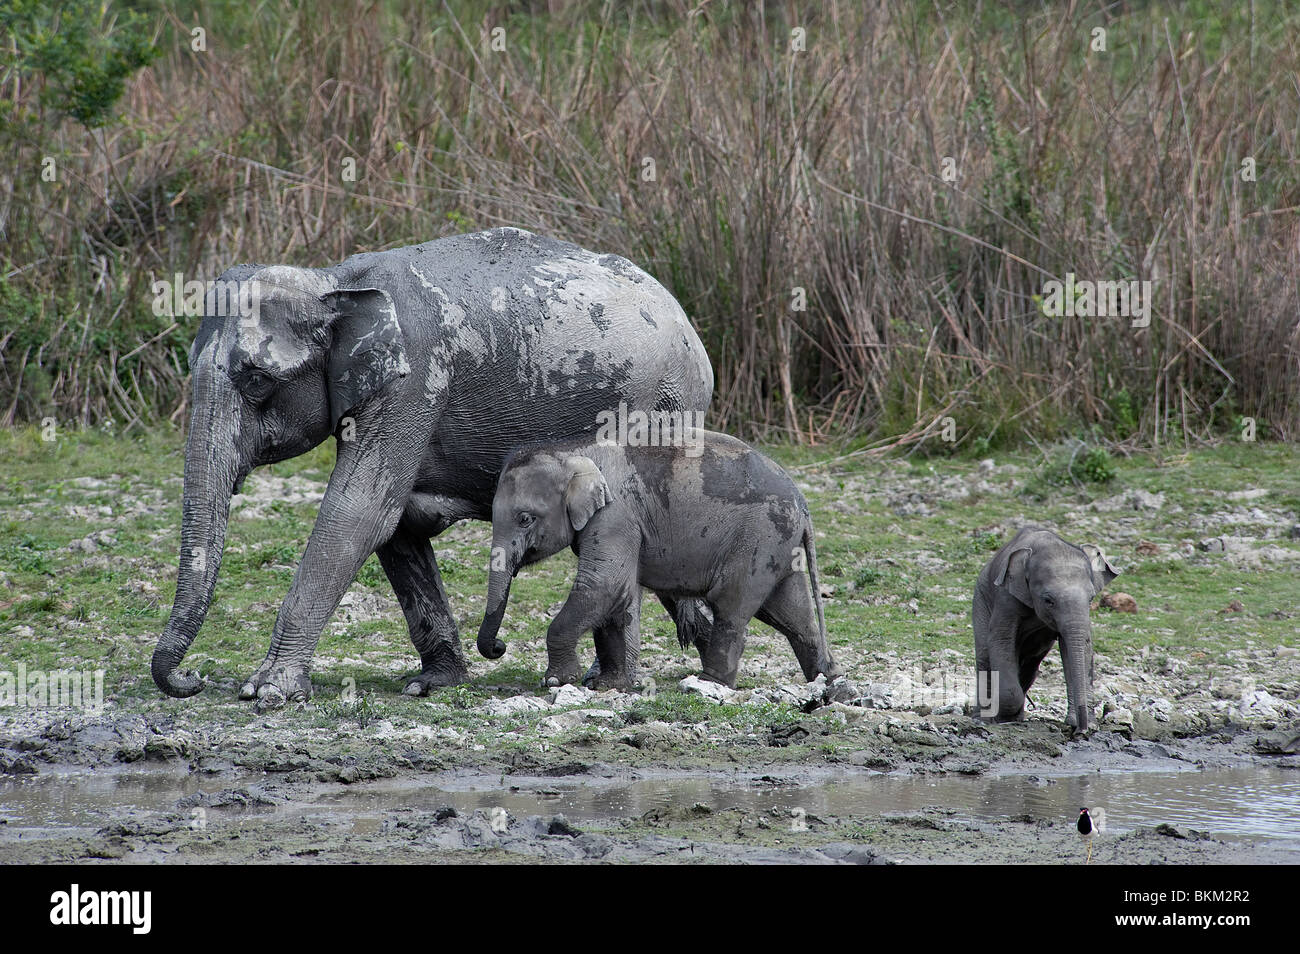 L'éléphant d'Asie, Elephas maximus, mère de bébés Parc national de Kaziranga, Inde Banque D'Images